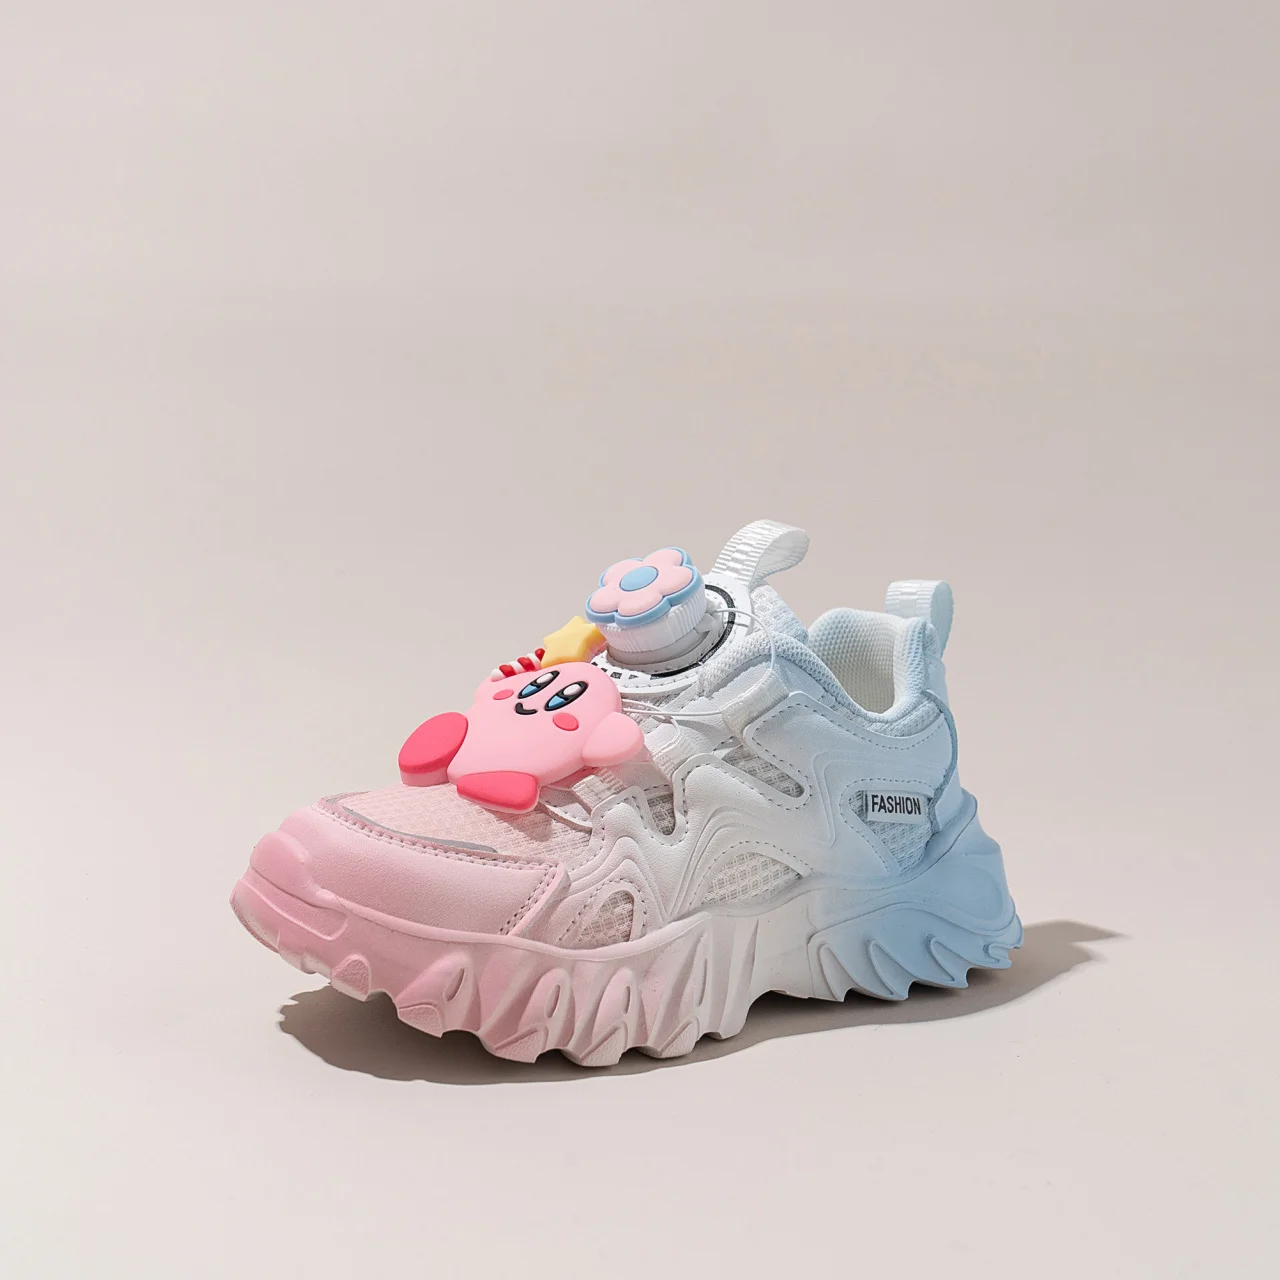 Sanrio Kawaii Kuromi בנות נעלי ספורט מגמה קיץ נעלי ריצה לנשימה קריקטורה חמודה רכה תחתון שיפוע אבא נעליים מתנה - 5